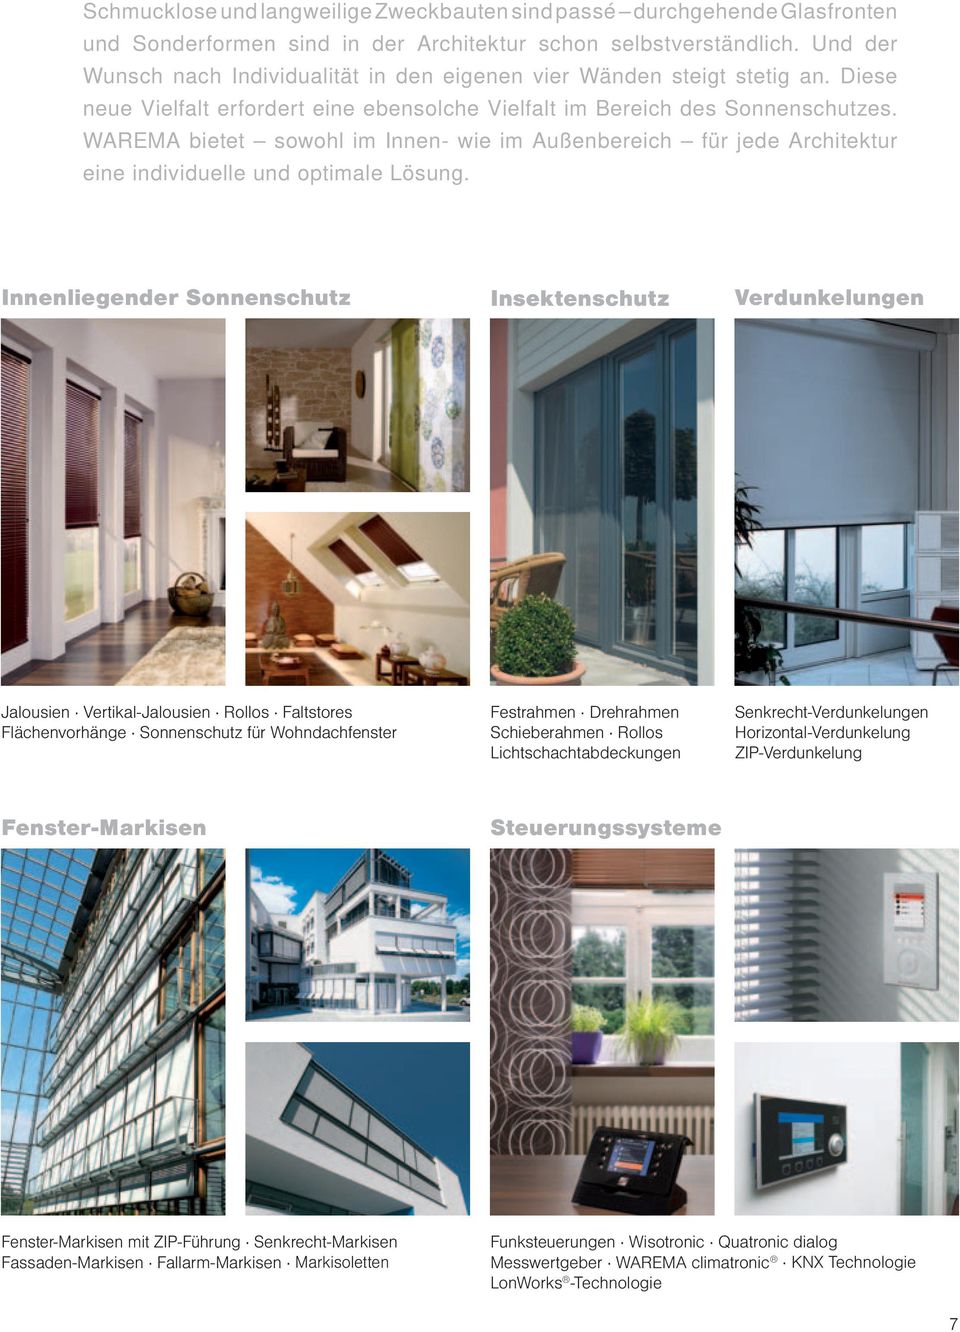 WAREMA bietet sowohl im Innen- wie im Außenbereich für jede Architektur eine individuelle und optimale Lösung.